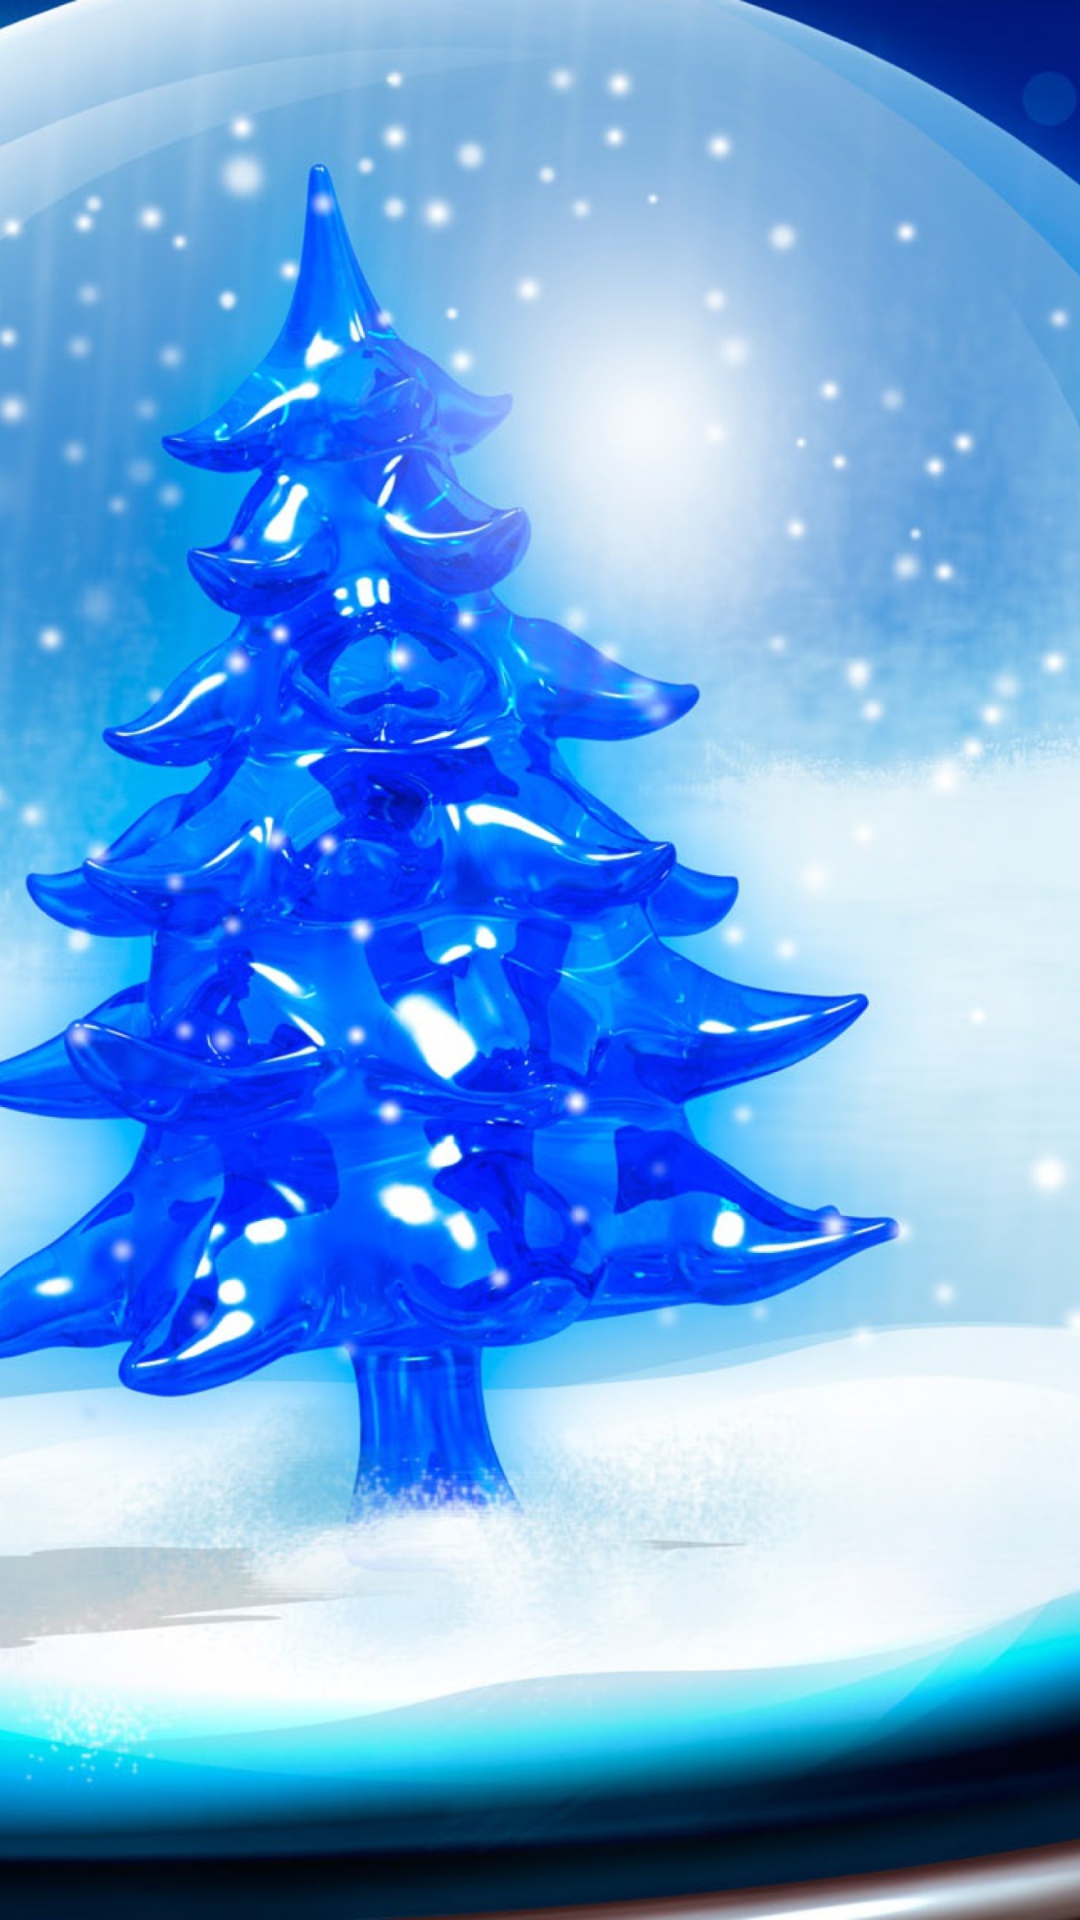 Das Snowy Christmas Tree Wallpaper 1080x1920